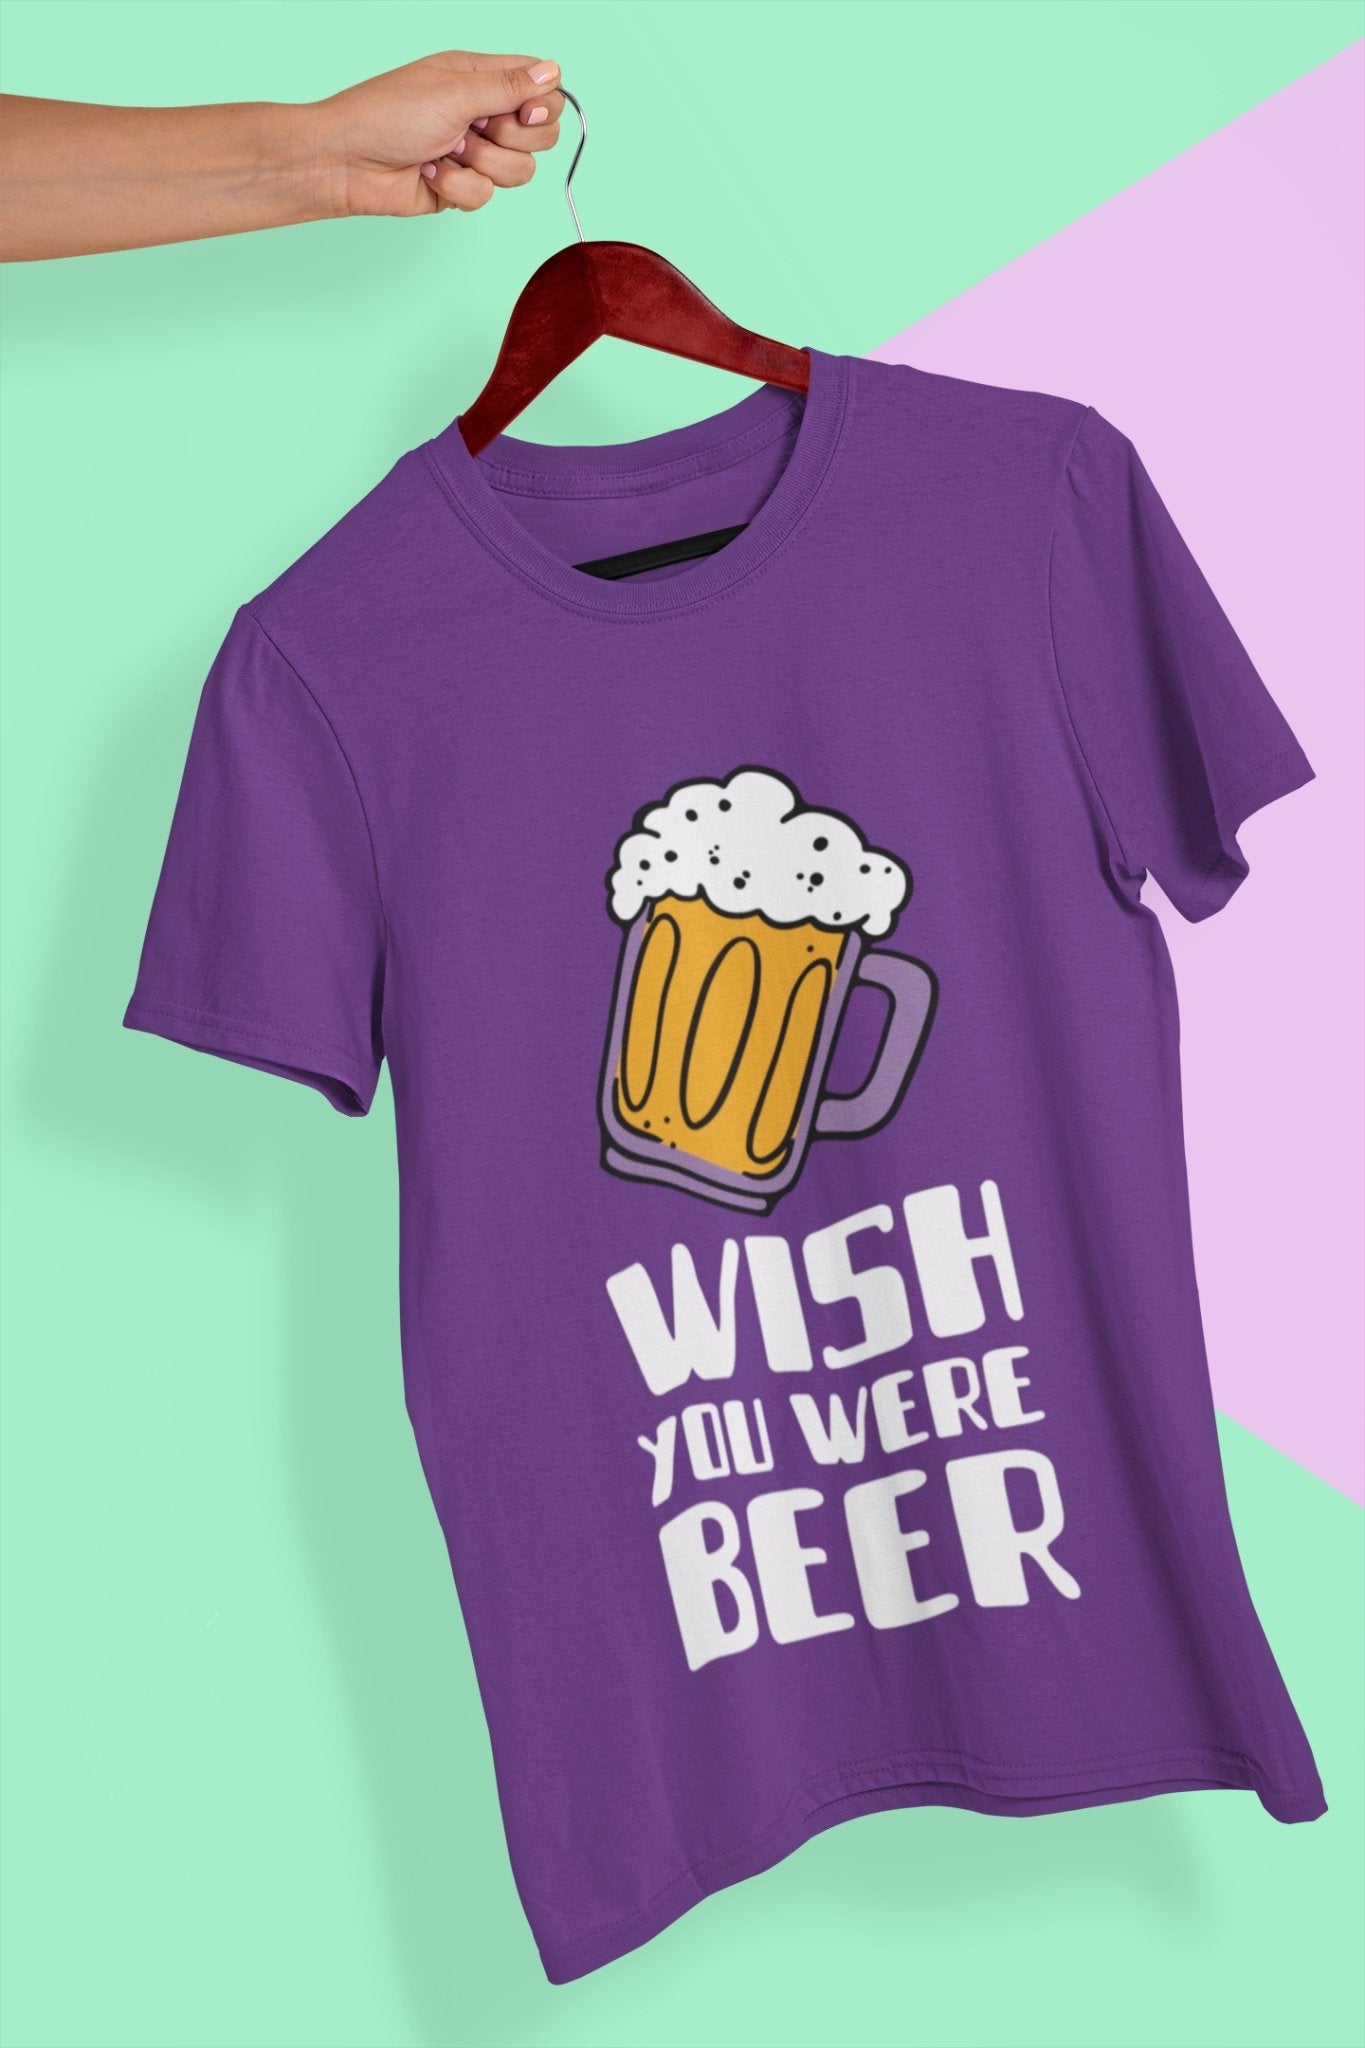 Wish You Were Beer Women Half Sleeves T-shirt- FunkyTeesClub - Funky Tees Club